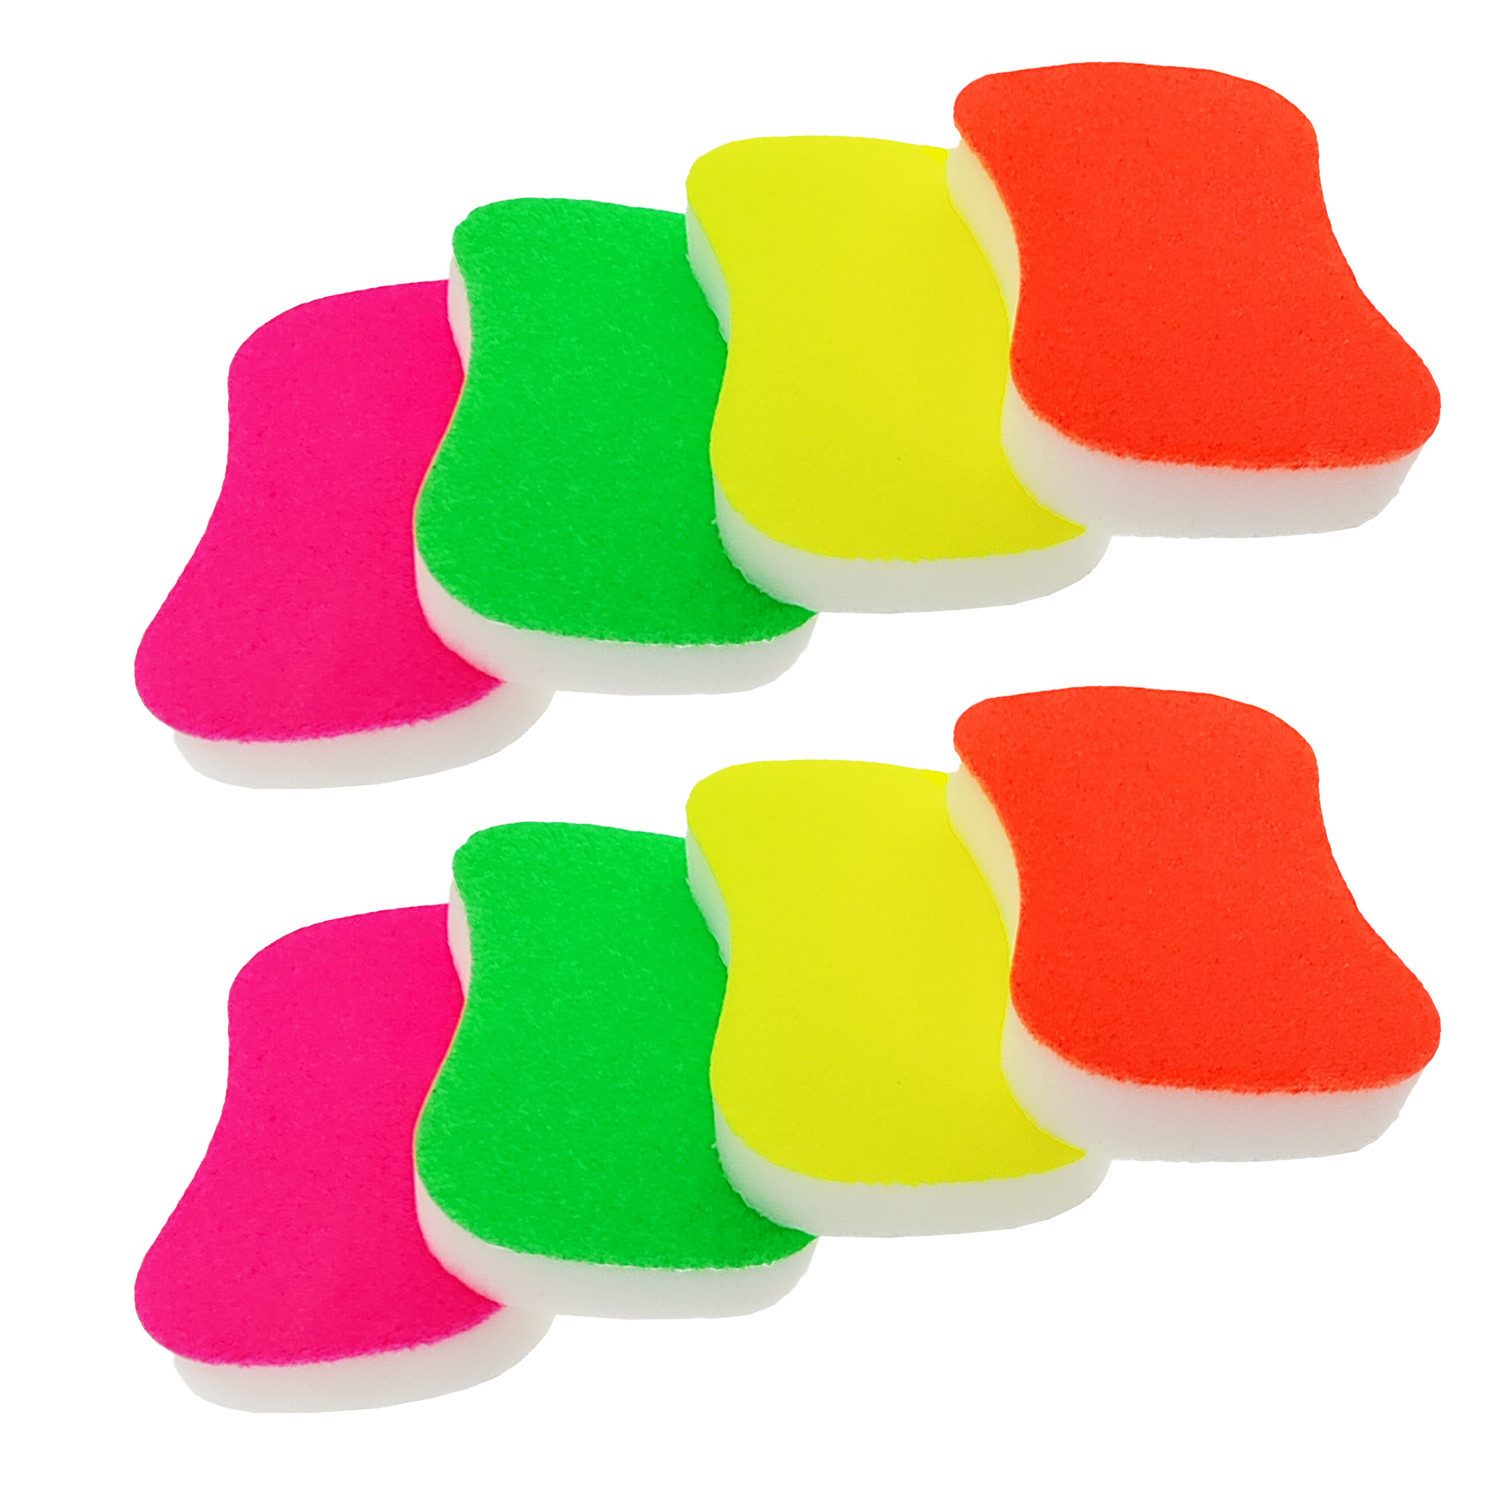 varivendo Scheuerschwamm 8er Set Neon Scheuerschwamm pink, orange, grün, gelb, Topfreiniger Schwamm Reinigungsschwamm Reinigungspad